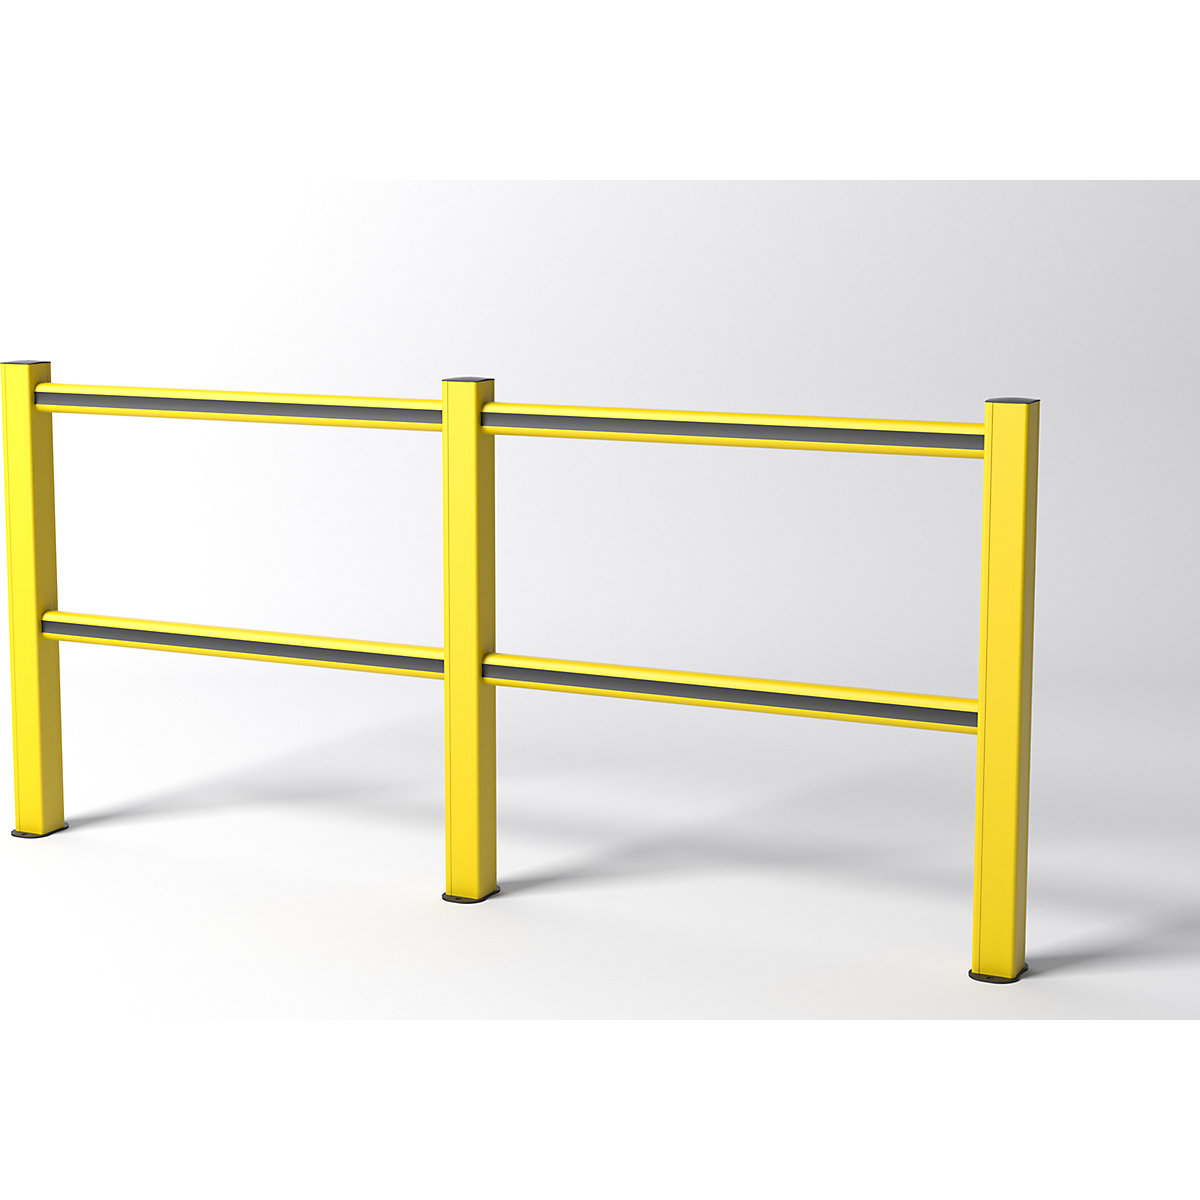 FLEX IMPACT Handlaufsystem, gelbe Pfosten – gelb/schwarze Streben, Breite 2500 mm-1